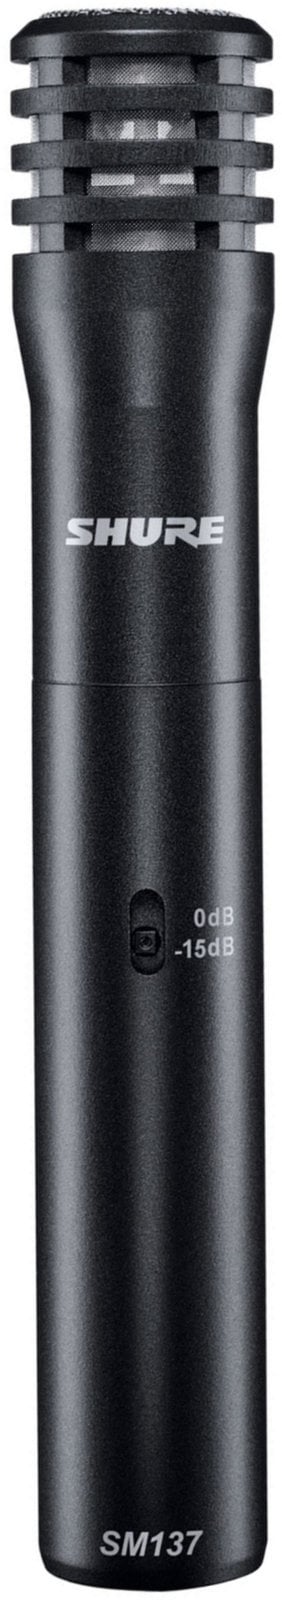 Instrument Condenser Microphone Shure SM137